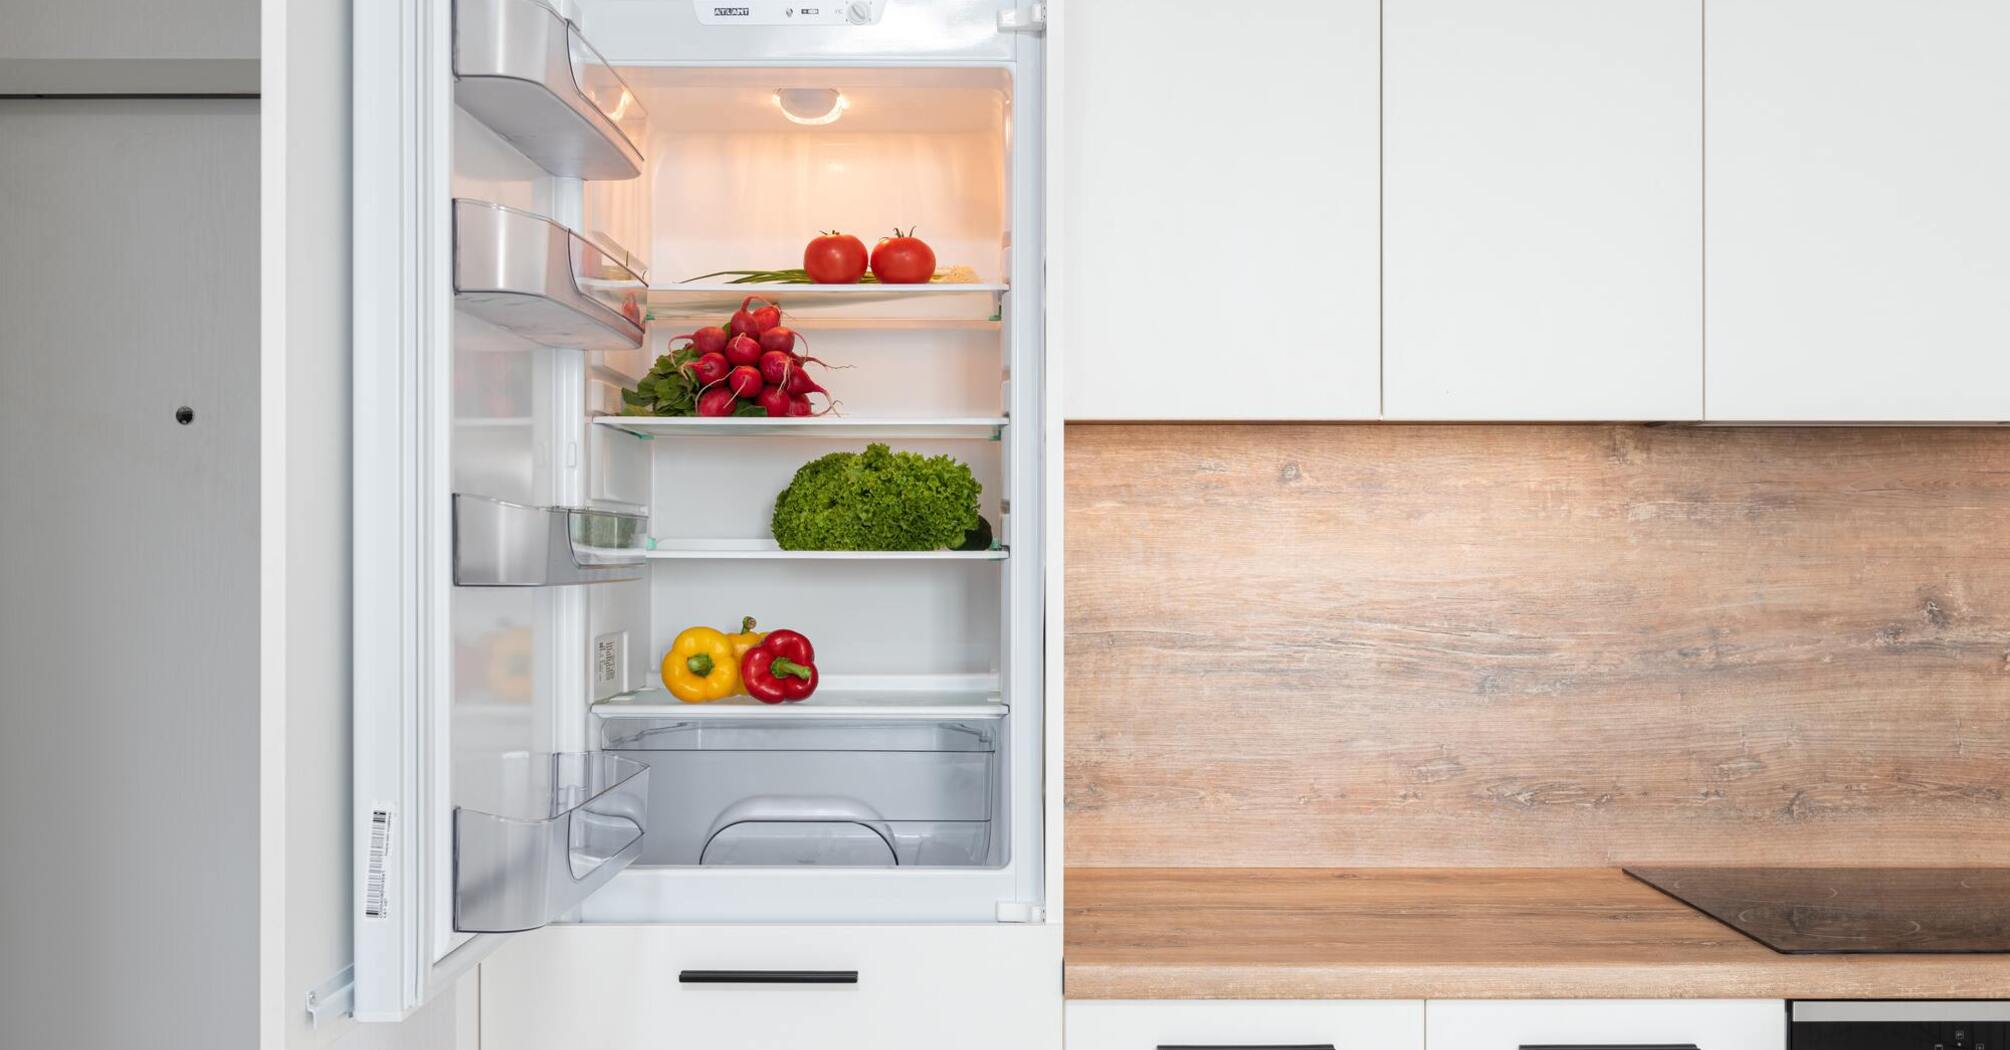 Как убрать неприятный запах в холодильнике: полезные лайфхаки